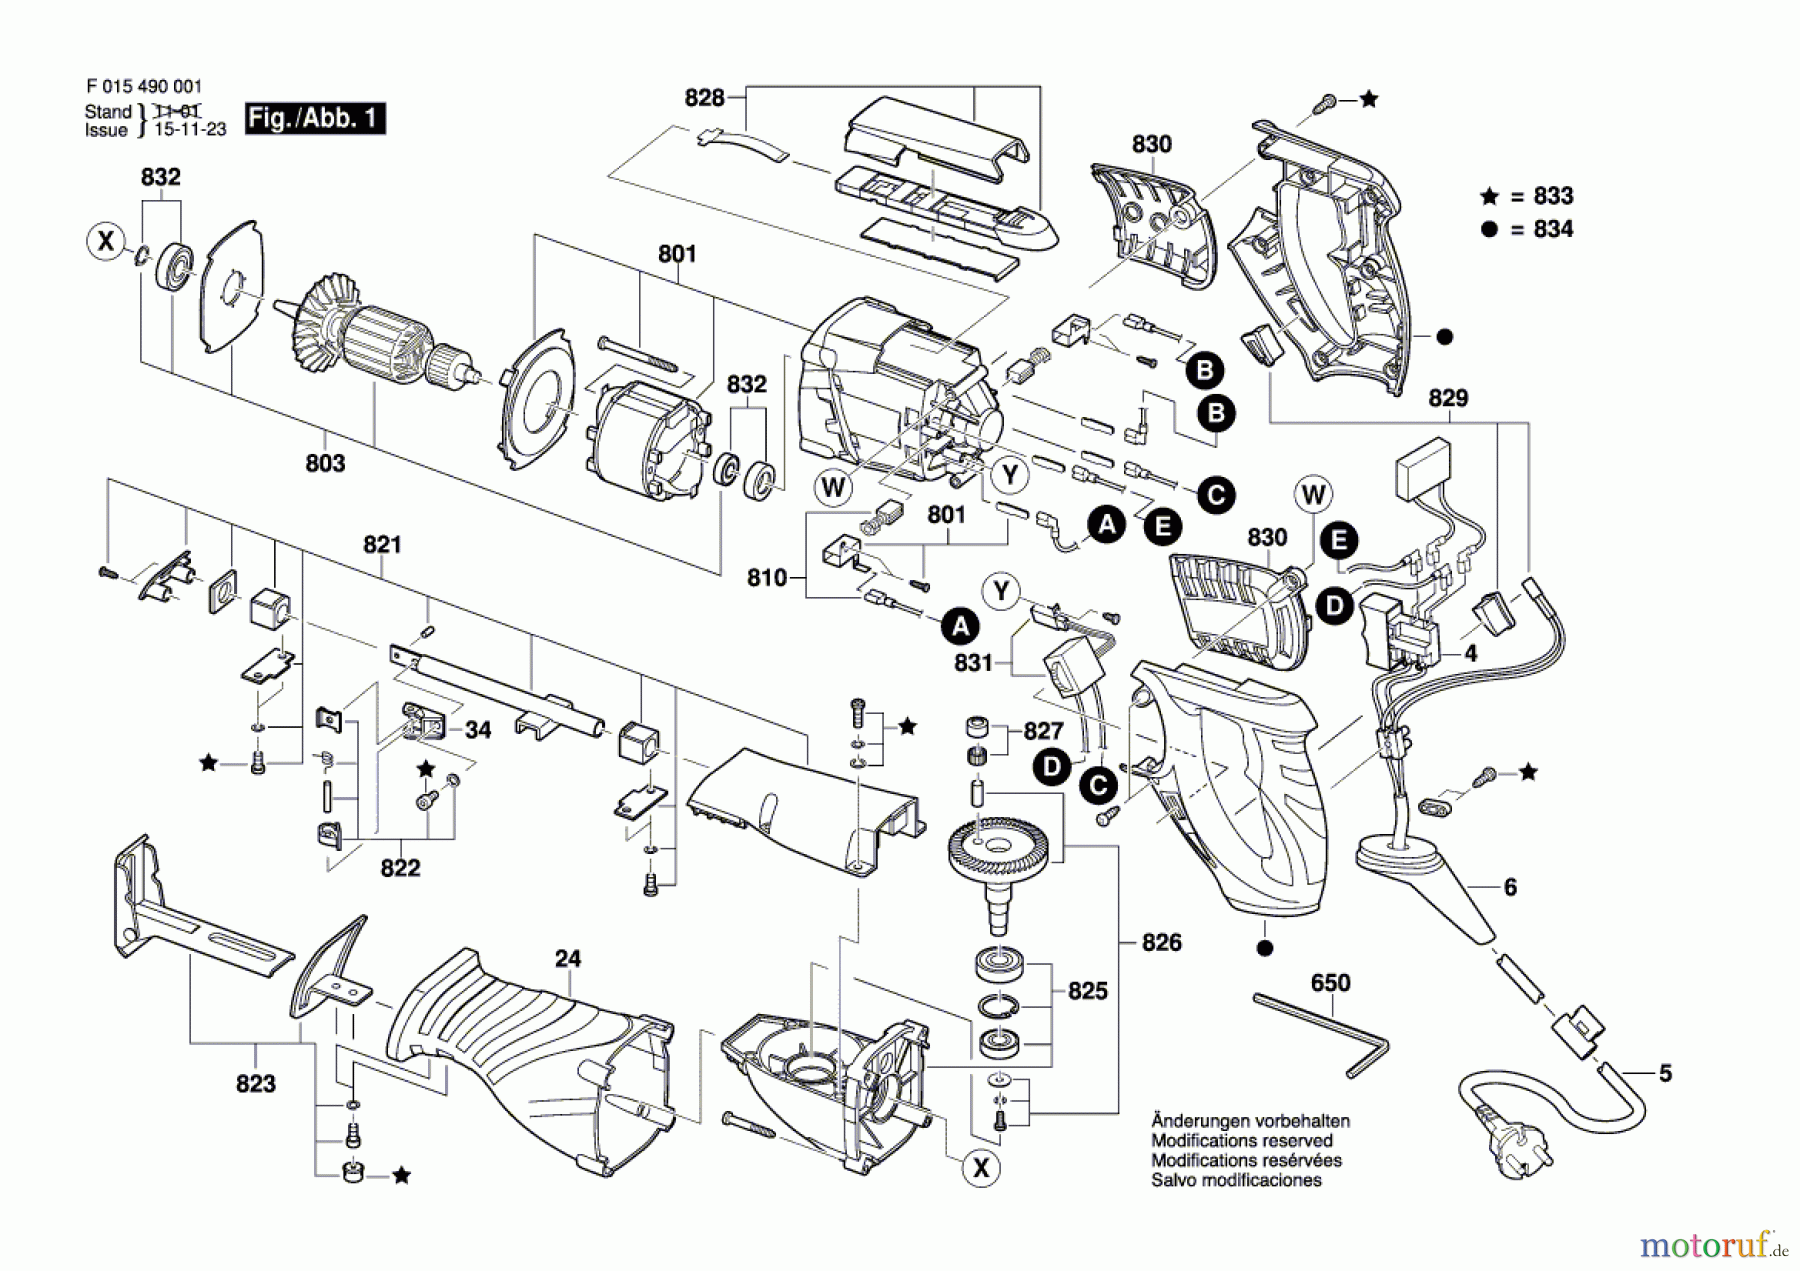  Bosch Werkzeug Winkelschleifer 4950 Seite 1